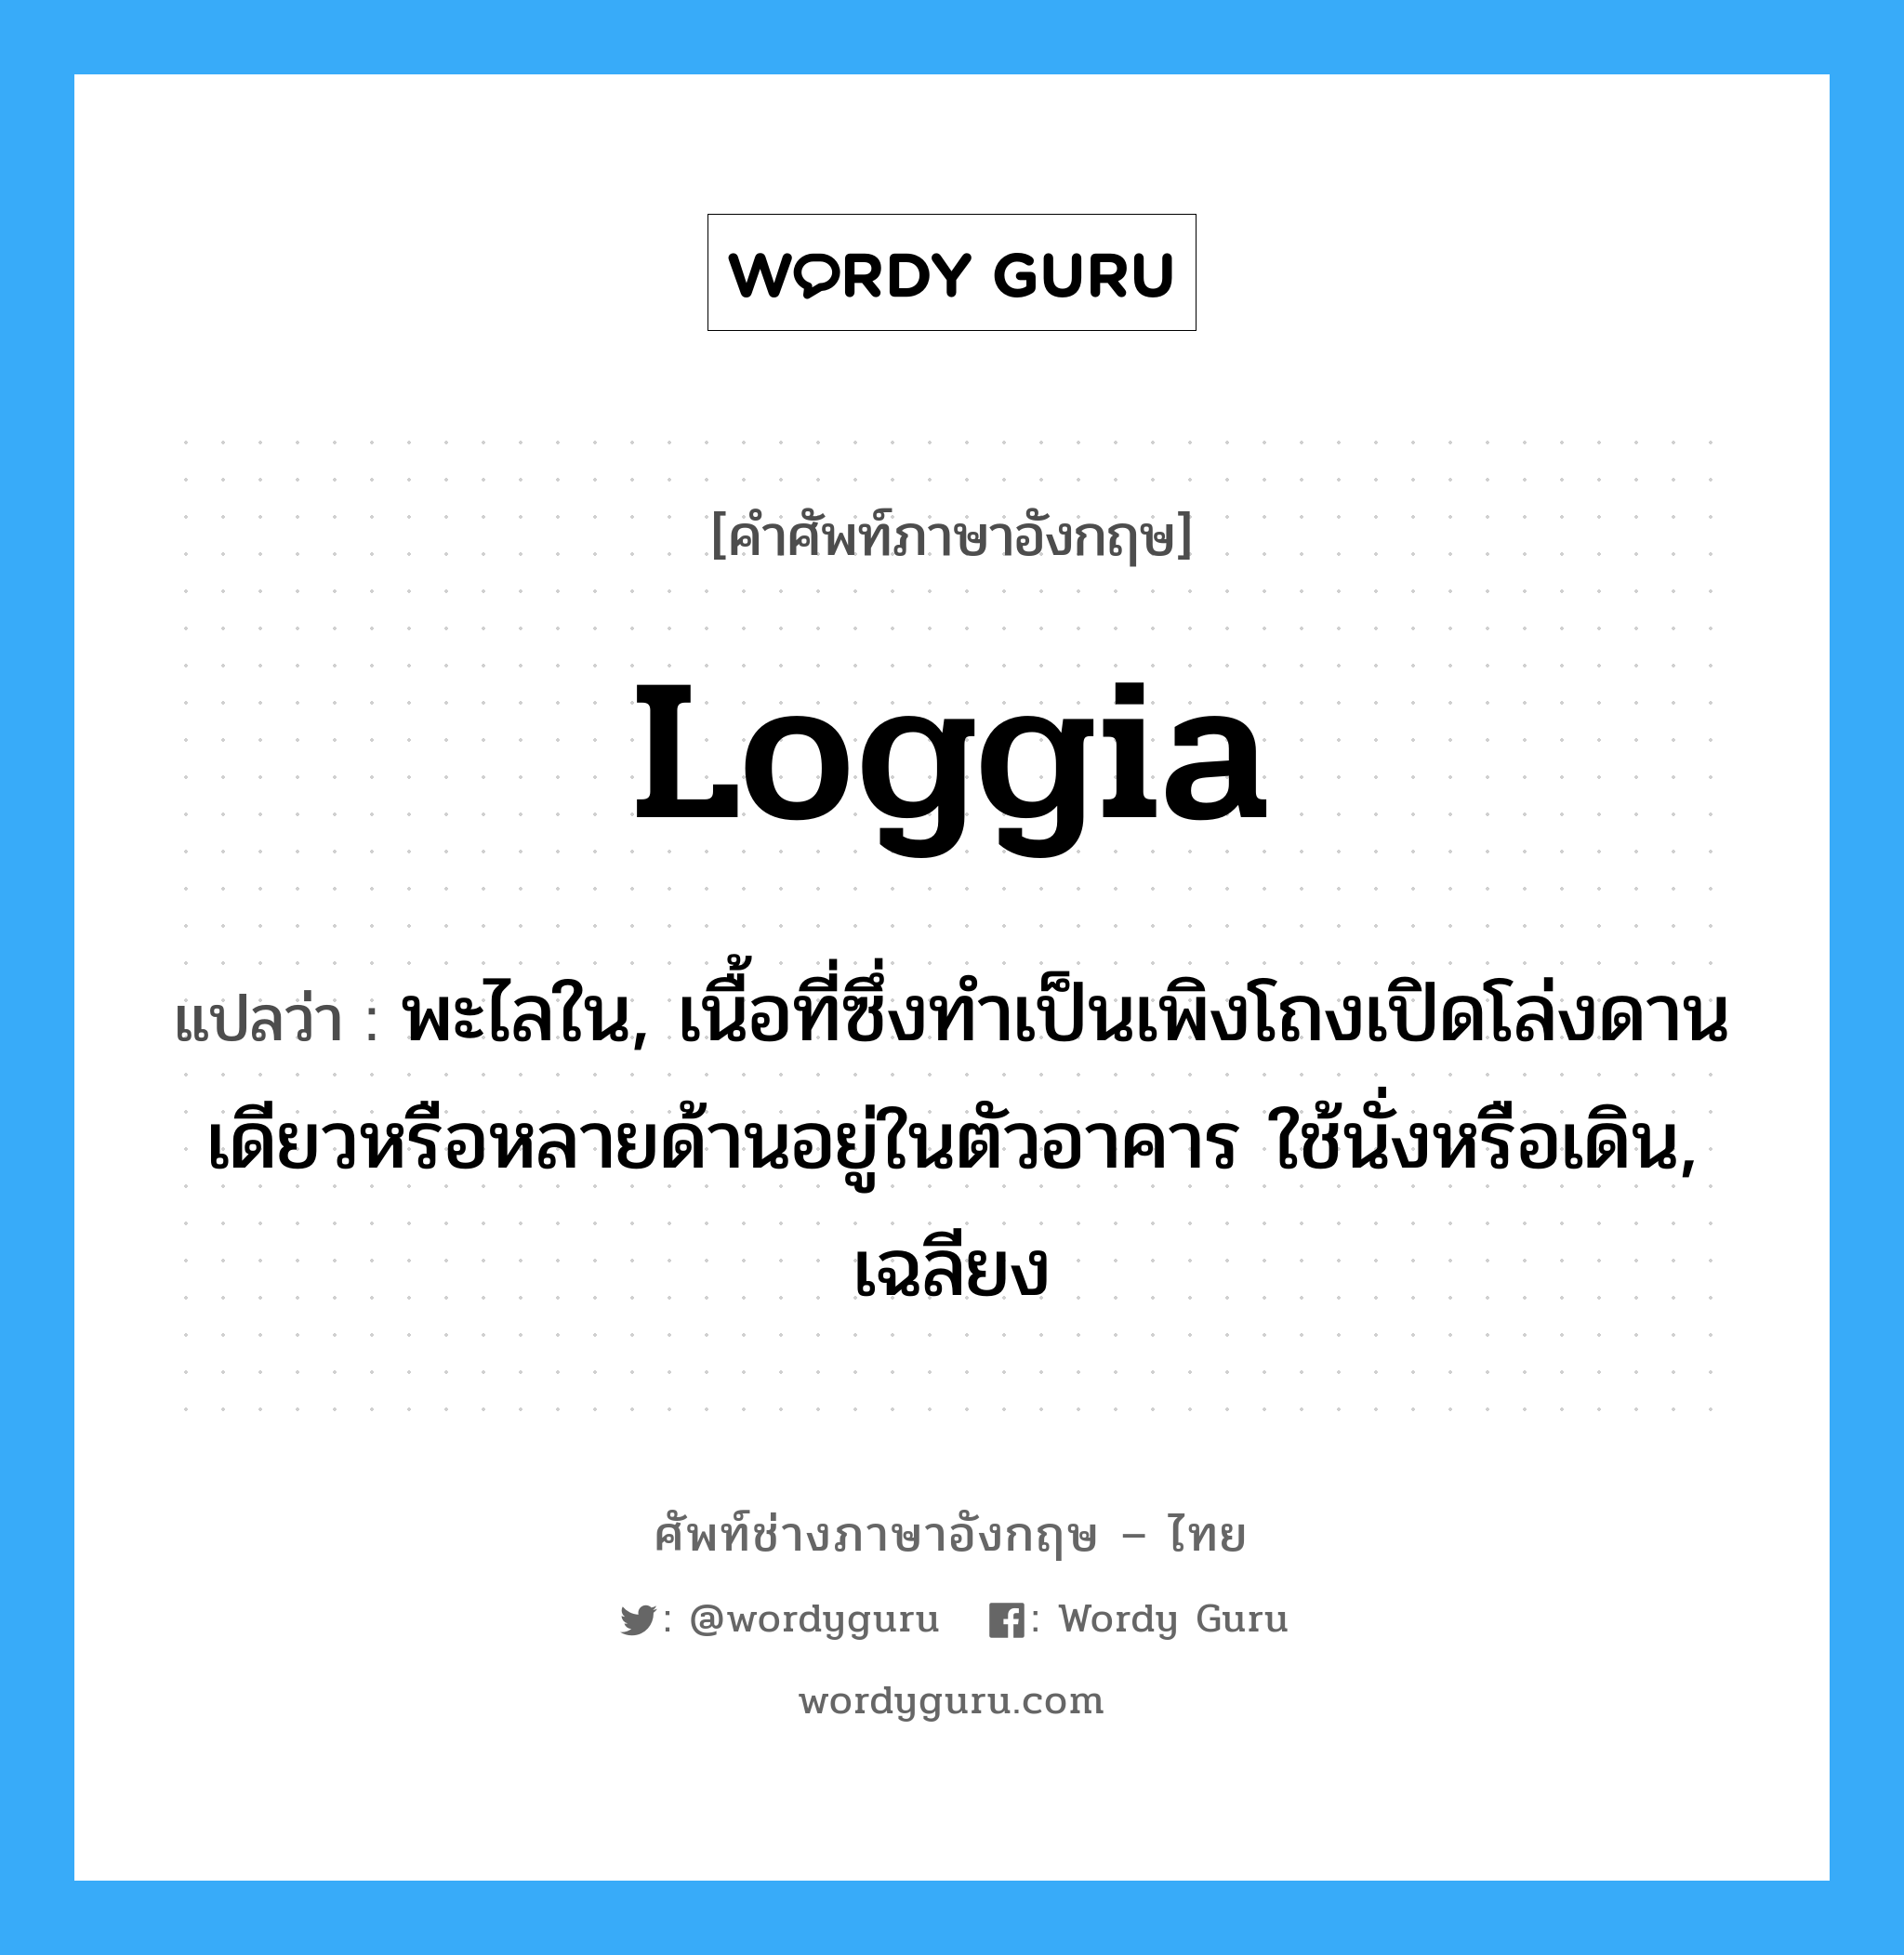 loggia แปลว่า?, คำศัพท์ช่างภาษาอังกฤษ - ไทย loggia คำศัพท์ภาษาอังกฤษ loggia แปลว่า พะไลใน, เนื้อที่ซึ่งทำเป็นเพิงโถงเปิดโล่งดานเดียวหรือหลายด้านอยู่ในตัวอาคาร ใช้นั่งหรือเดิน, เฉลียง